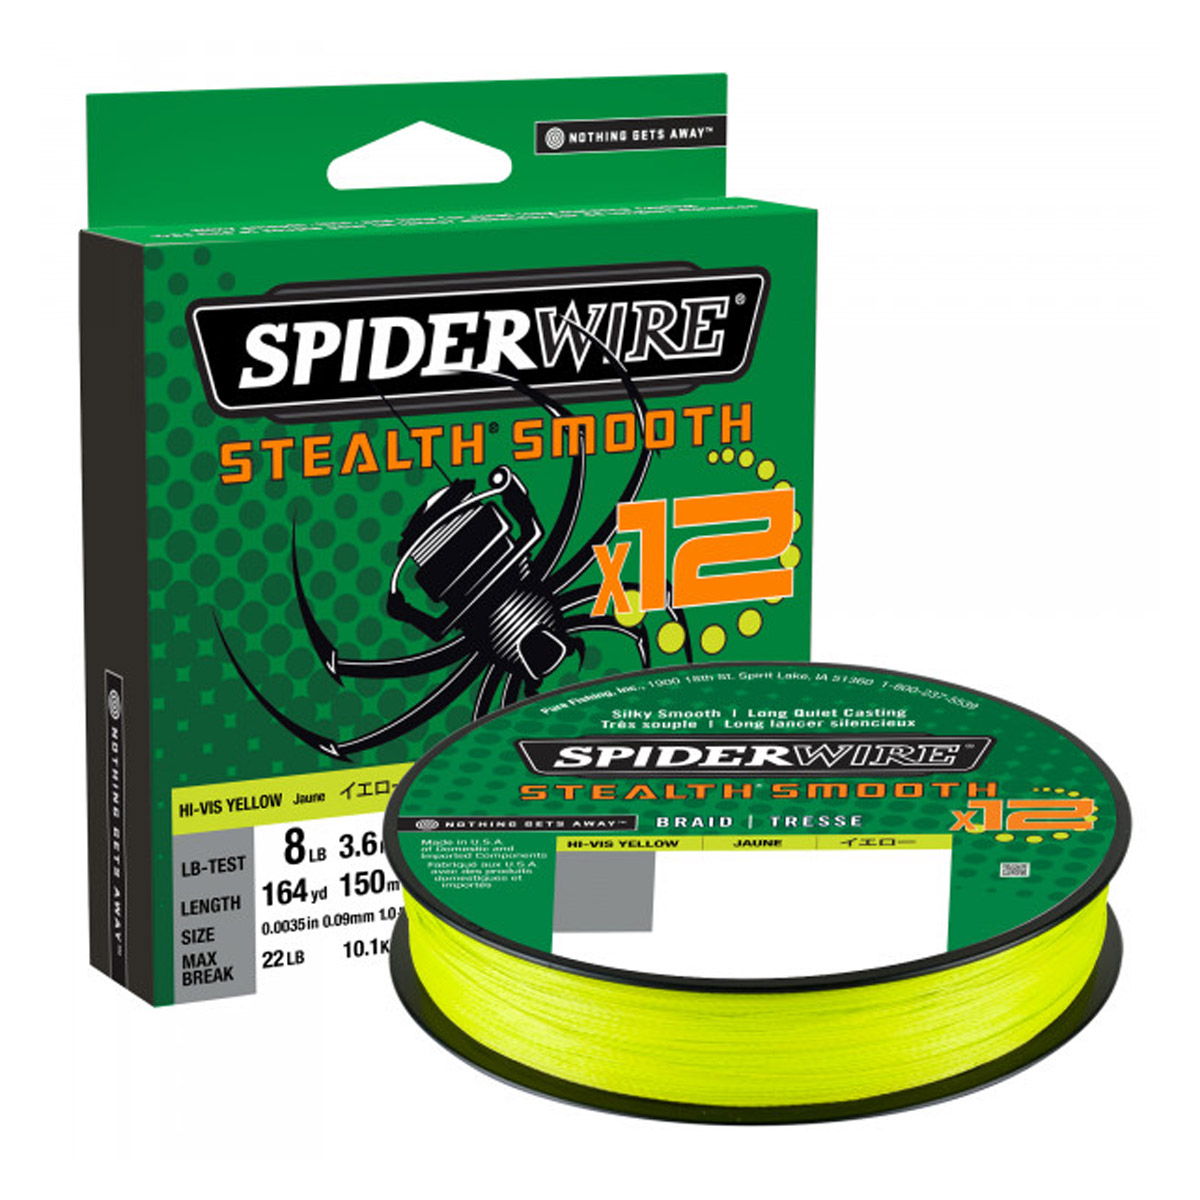 SpiderWire Stealth® Smooth 12 Braid Hi-Vis Yellow 150 M